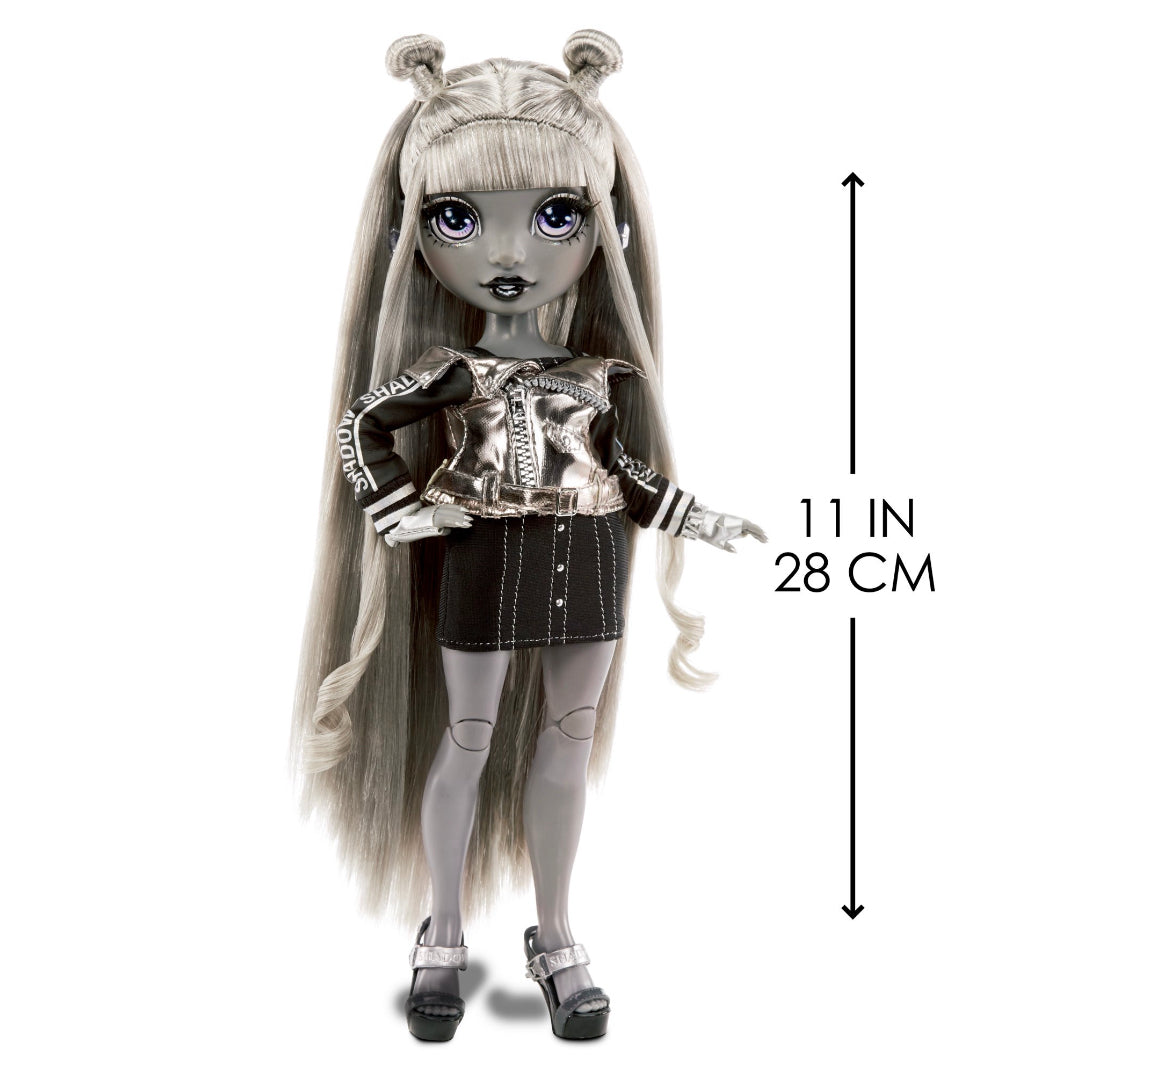 Rainbow High Shadow Series 1 Luna Madison Greyscale Box Fashion Doll 58353